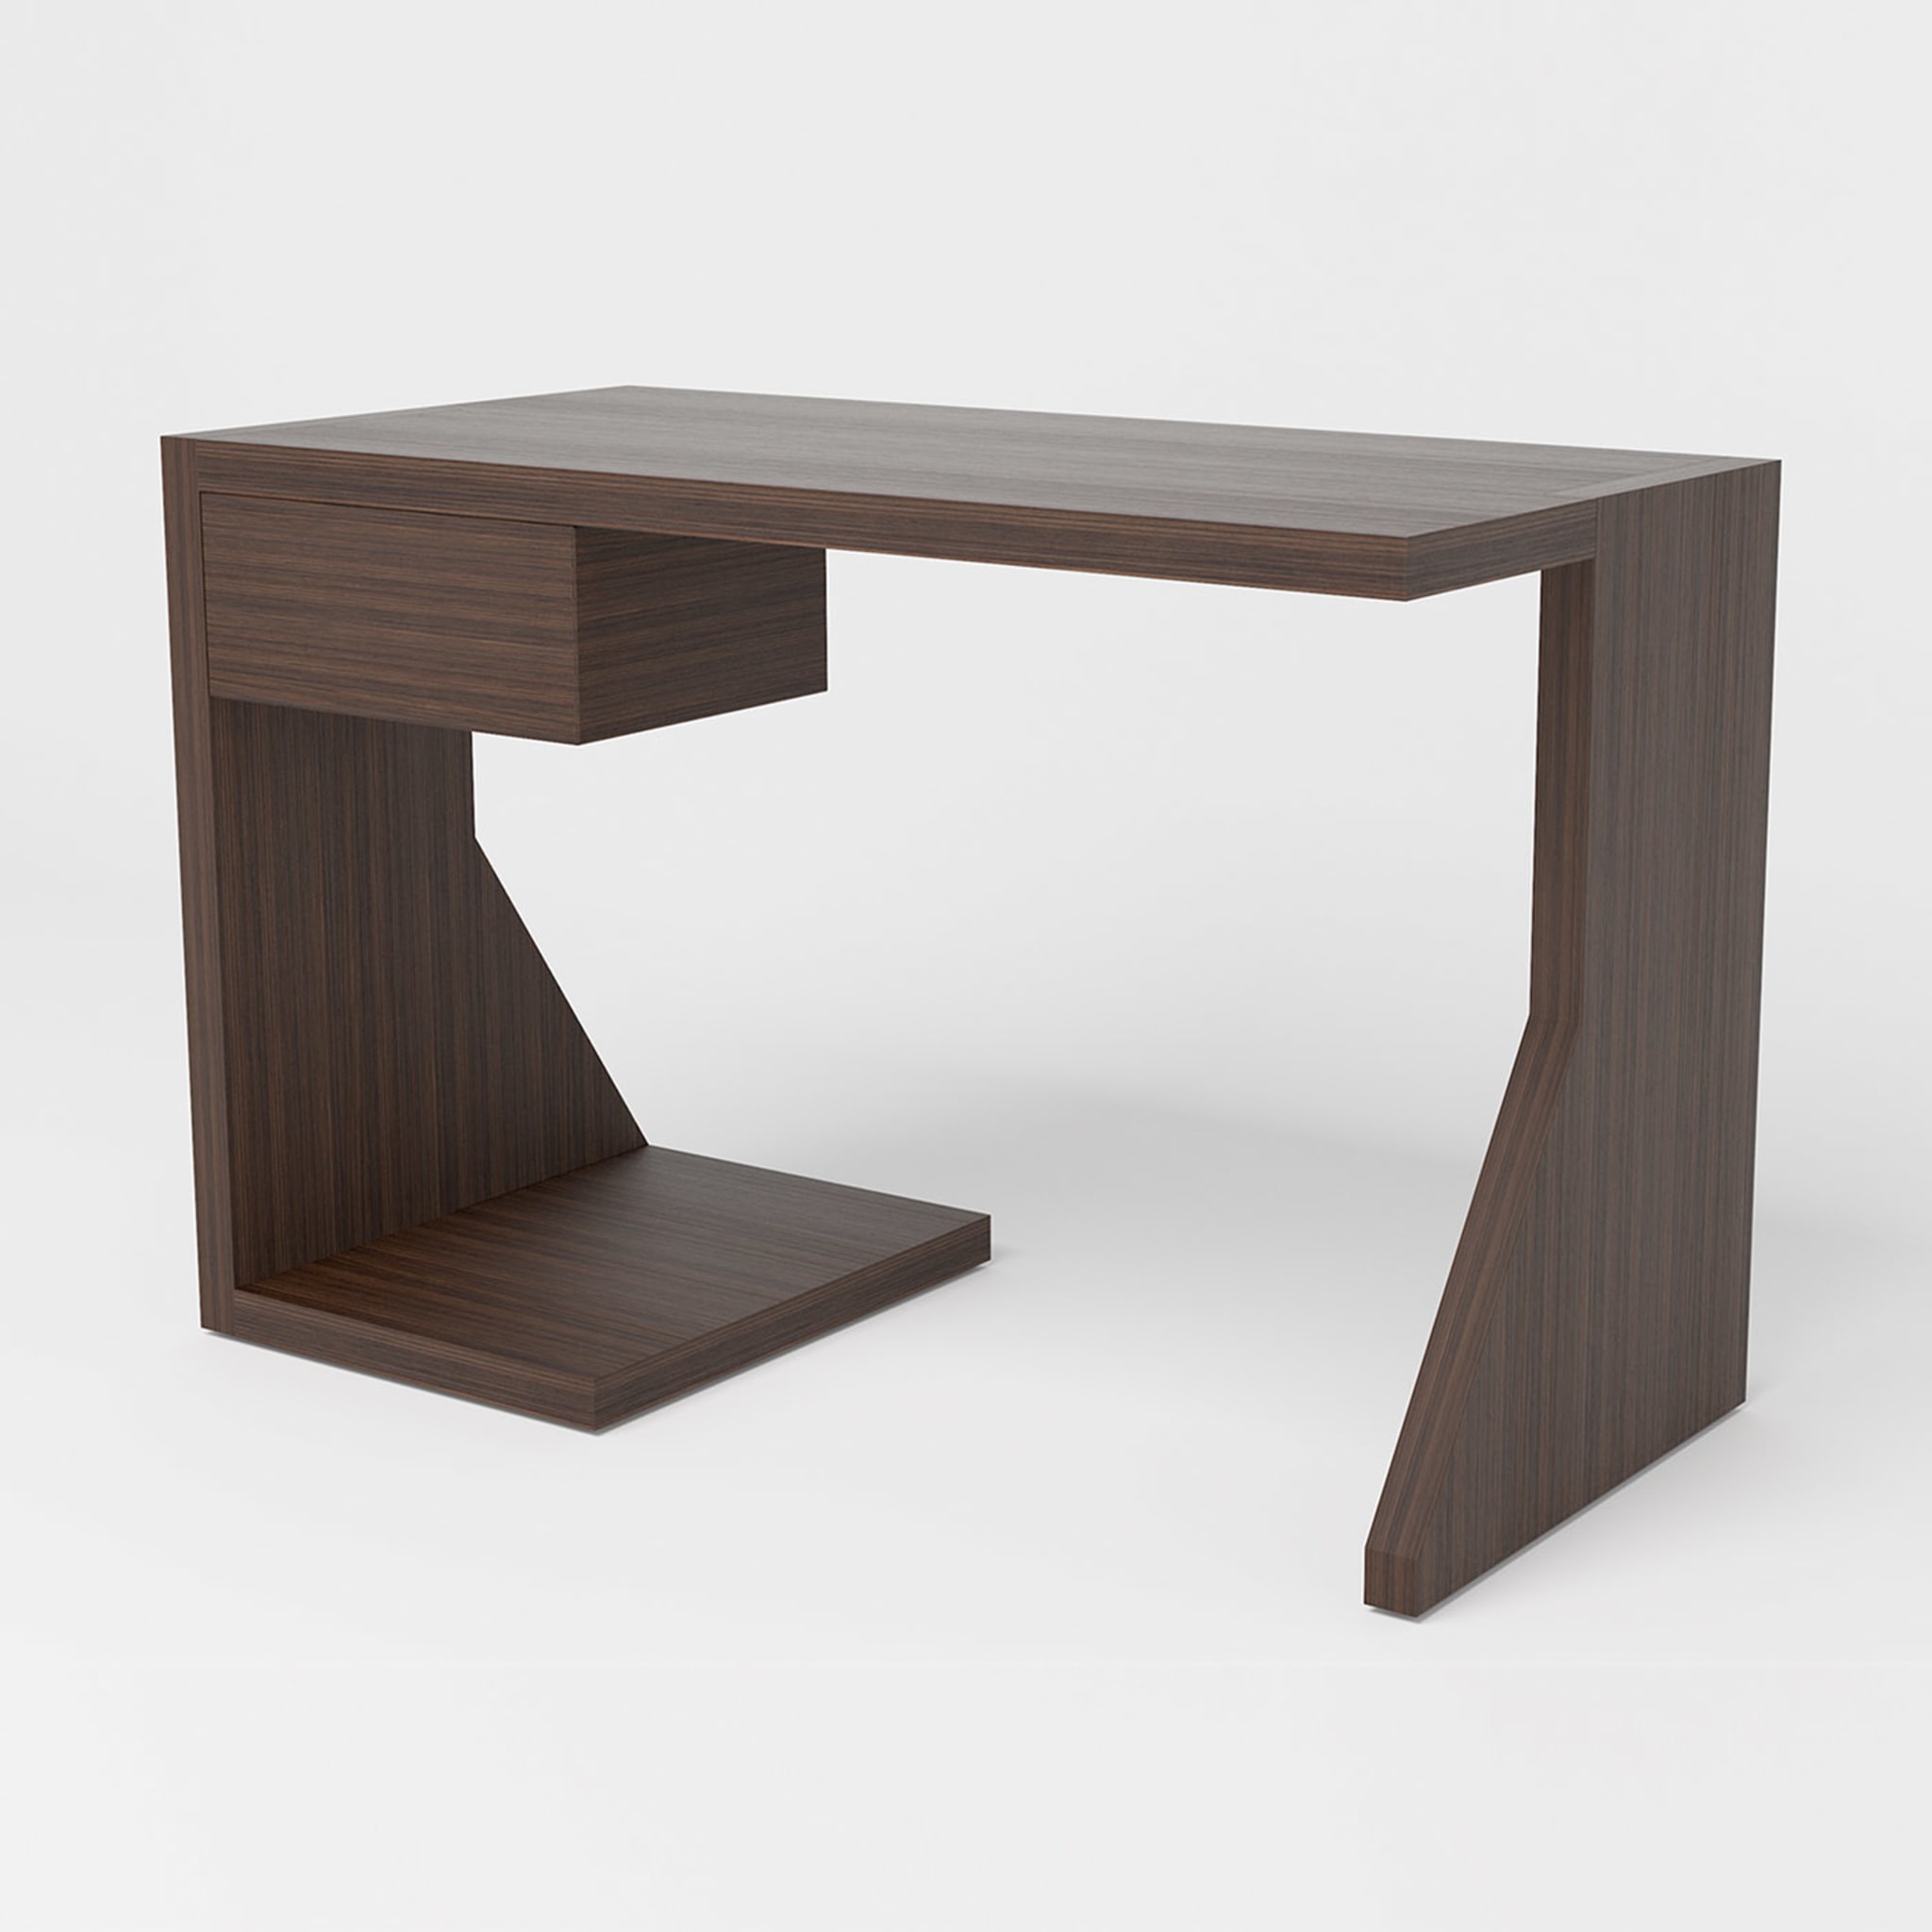 Y Wood Desk by Antonio Saporito - Alternative view 1